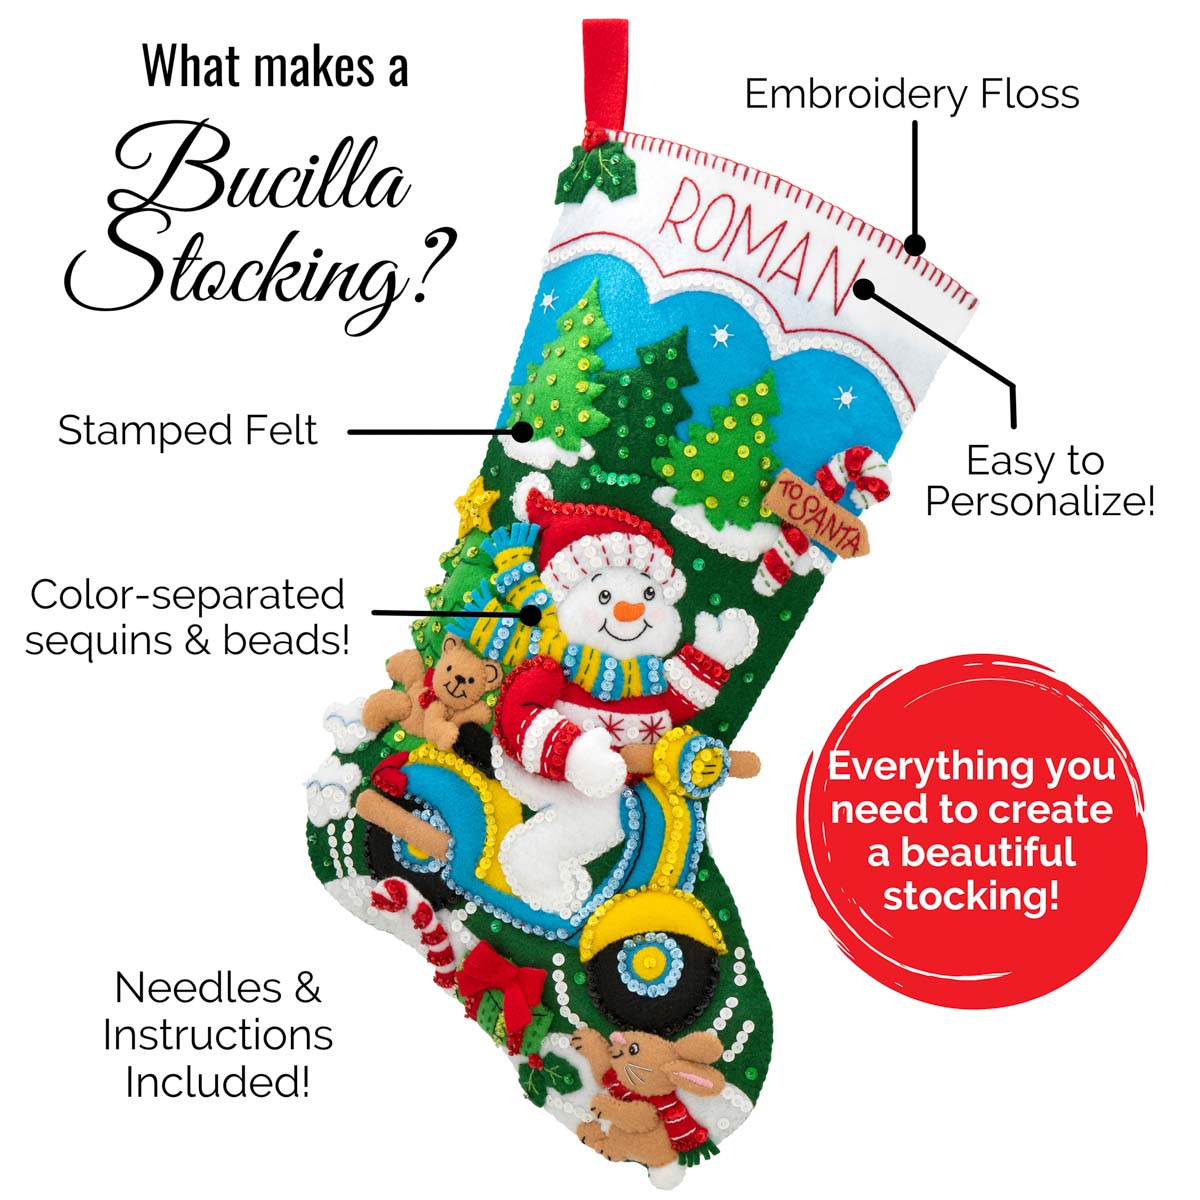 Bucilla ® Seasonal - Felt - Stocking Kits - Christmas Nativity - 89531E